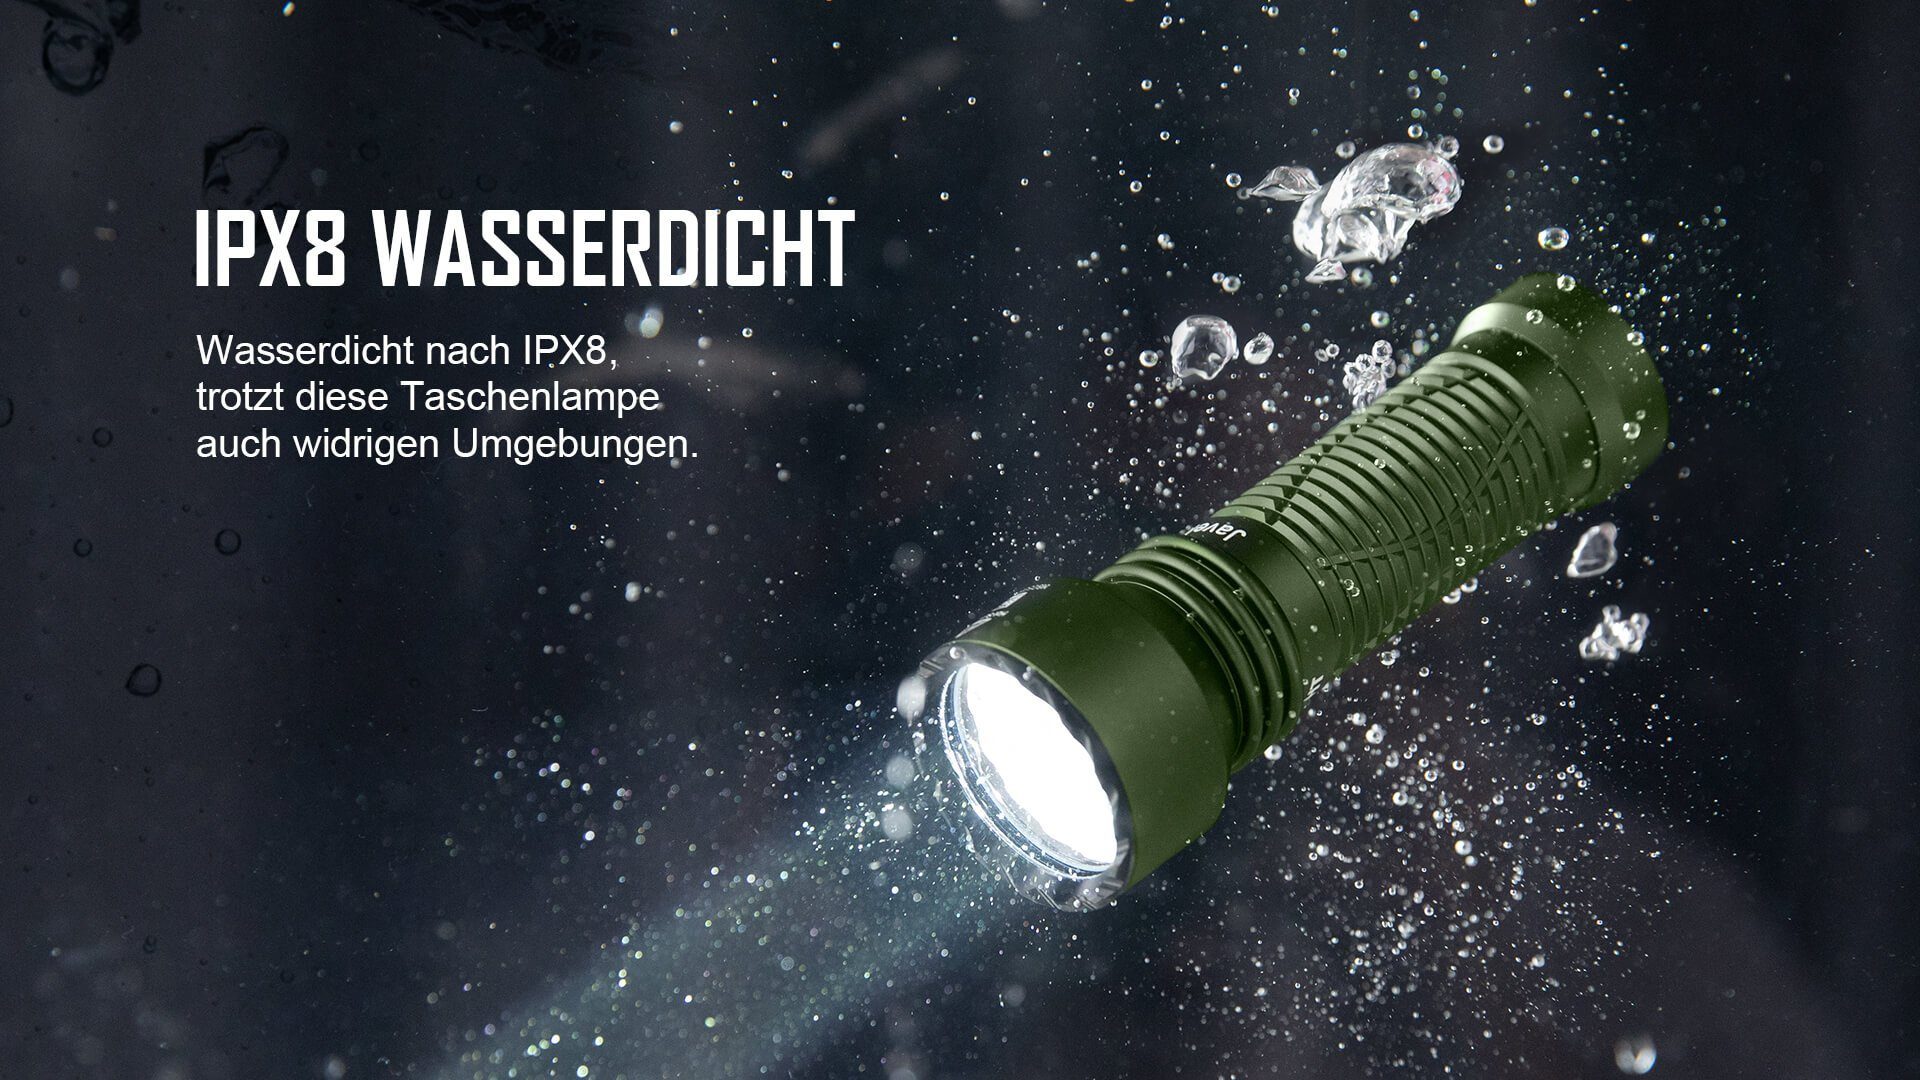 OLIGHT LED Taschenlampe Javelot Mini OD taktische IPX8 Notfall, Lichtquelle, einer zoombare Patrouille, LED Grün Camping runden für mit Taschenlampe wiederaufbare Handlampe